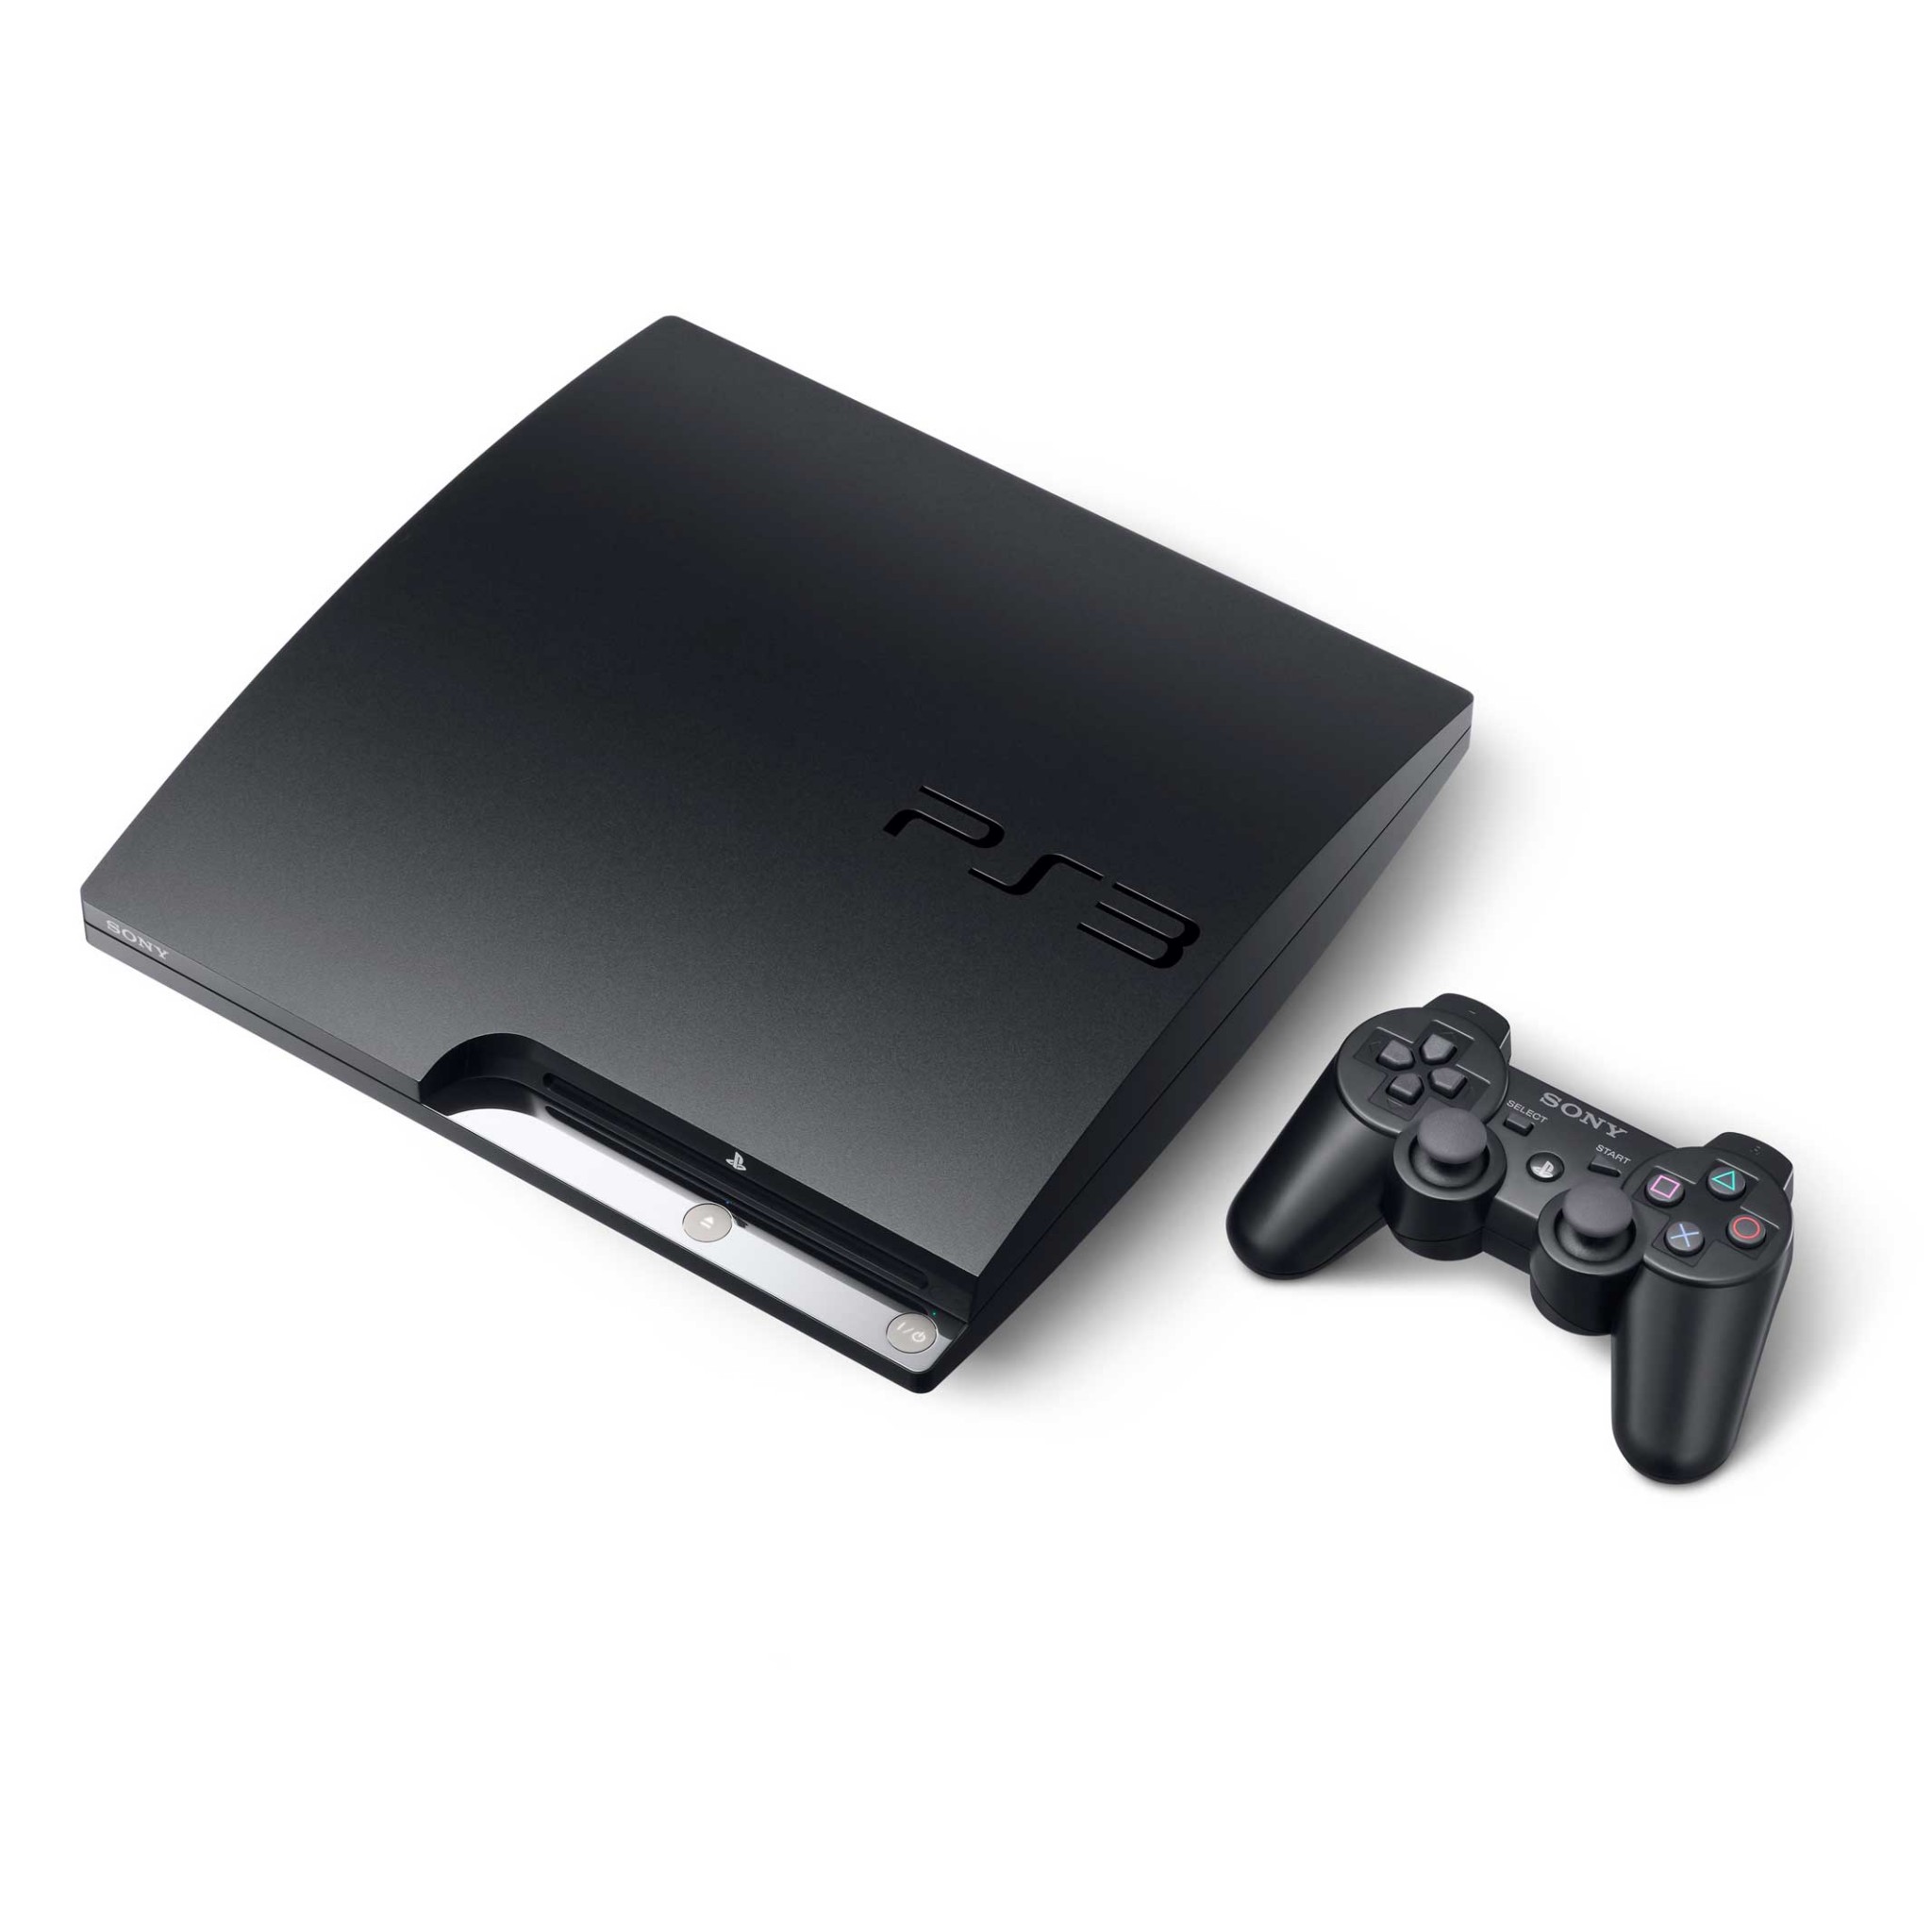 Sony Playstation 3 Slim 320 GB 30 Oyun Yüklü Konsol (Teşhir)